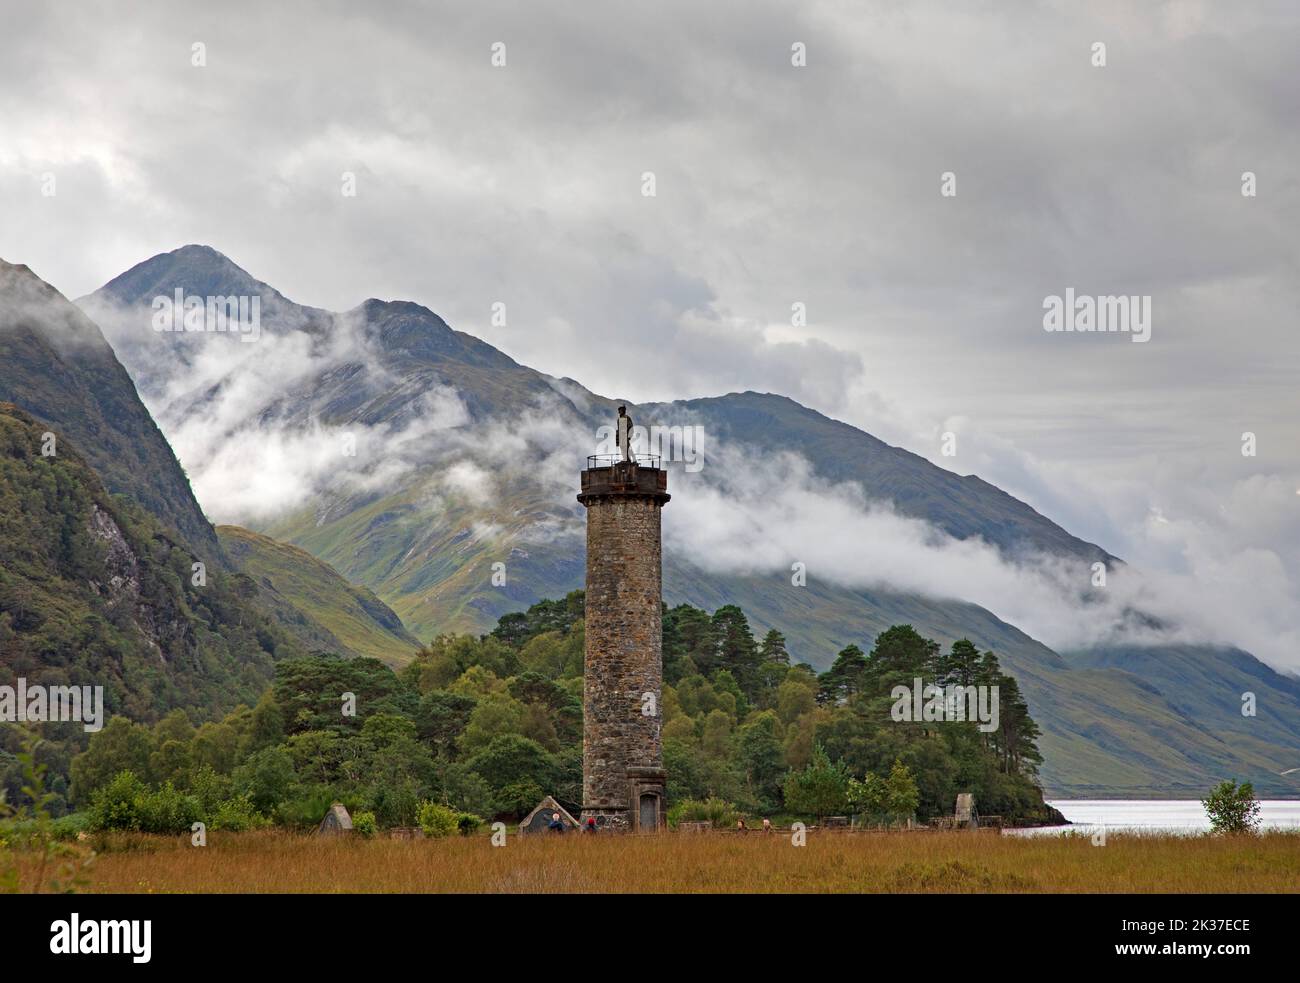 Monumento di Glenifinnan, con nebbia sulle montagne dietro, Lochaber, Highlands scozzesi, Scozia, Regno Unito Foto Stock